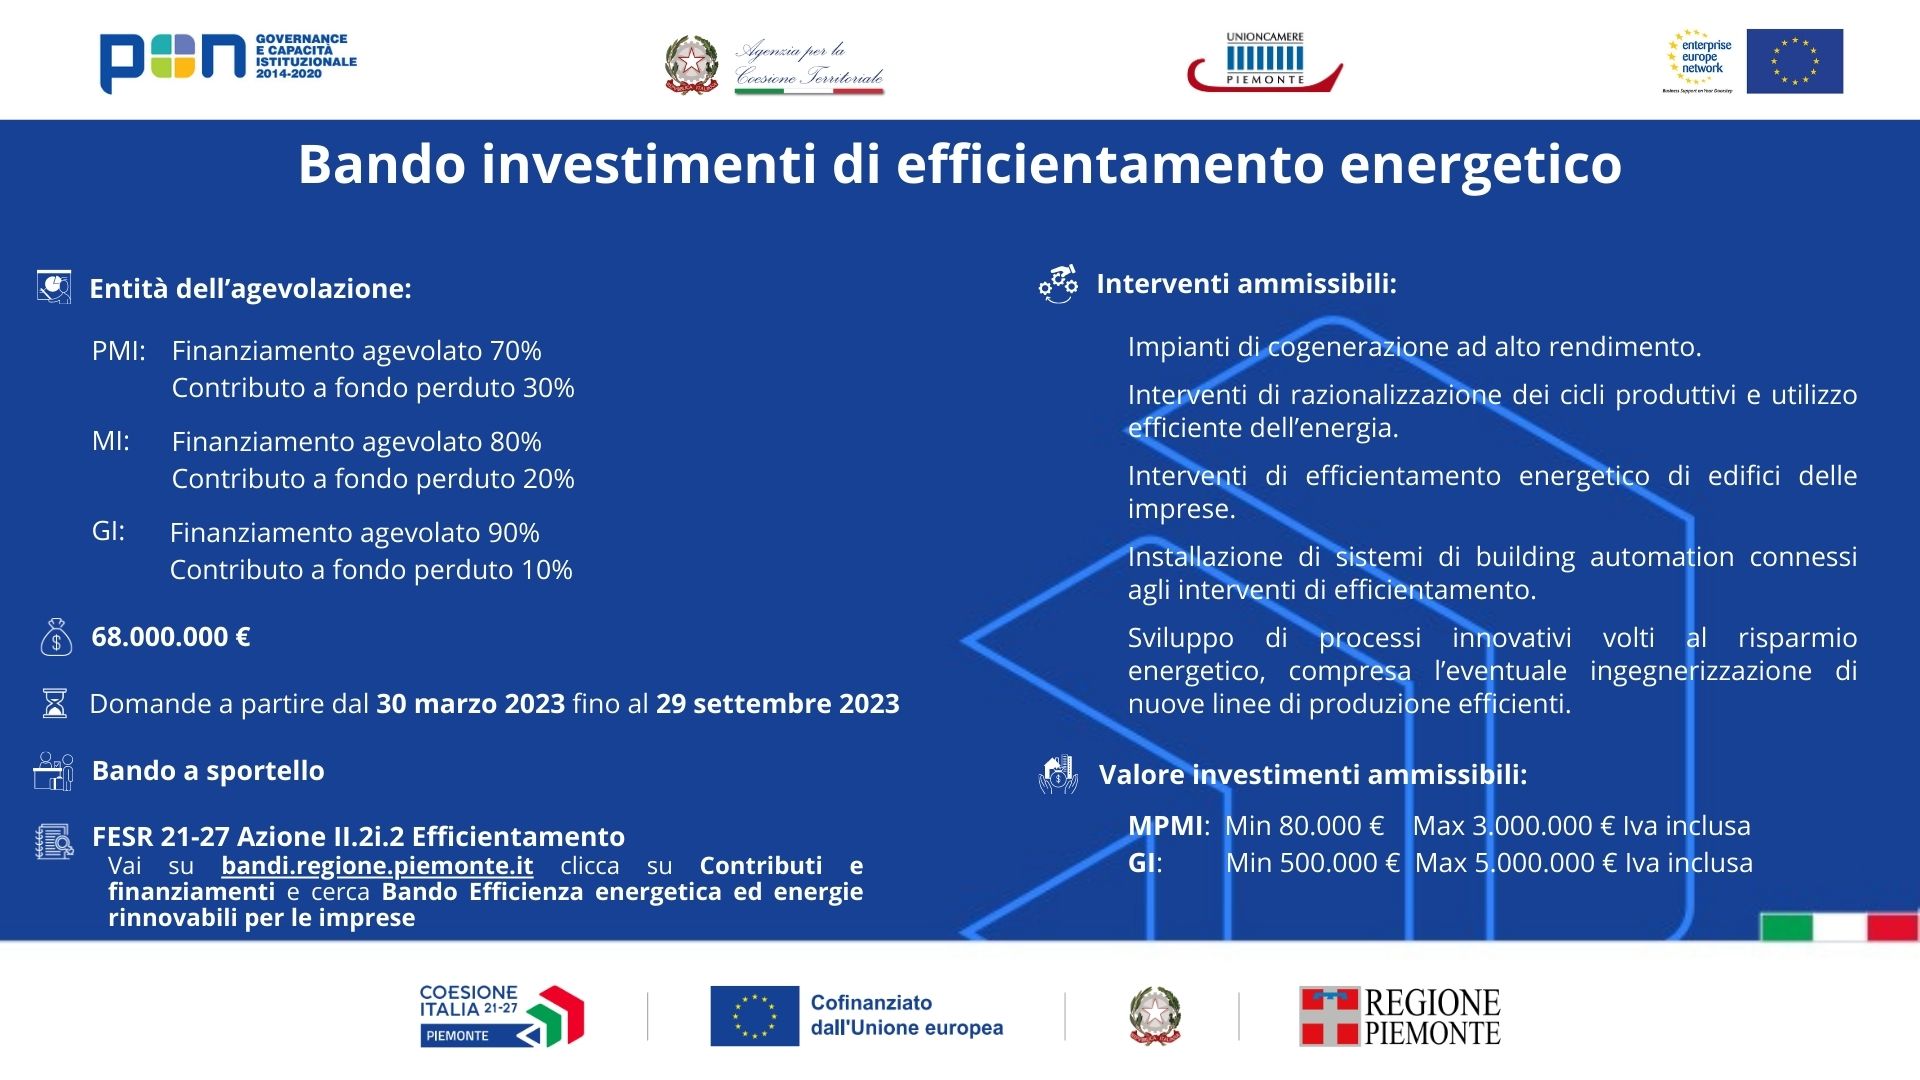 Bando investimenti di efficientamento energetico_Infografica